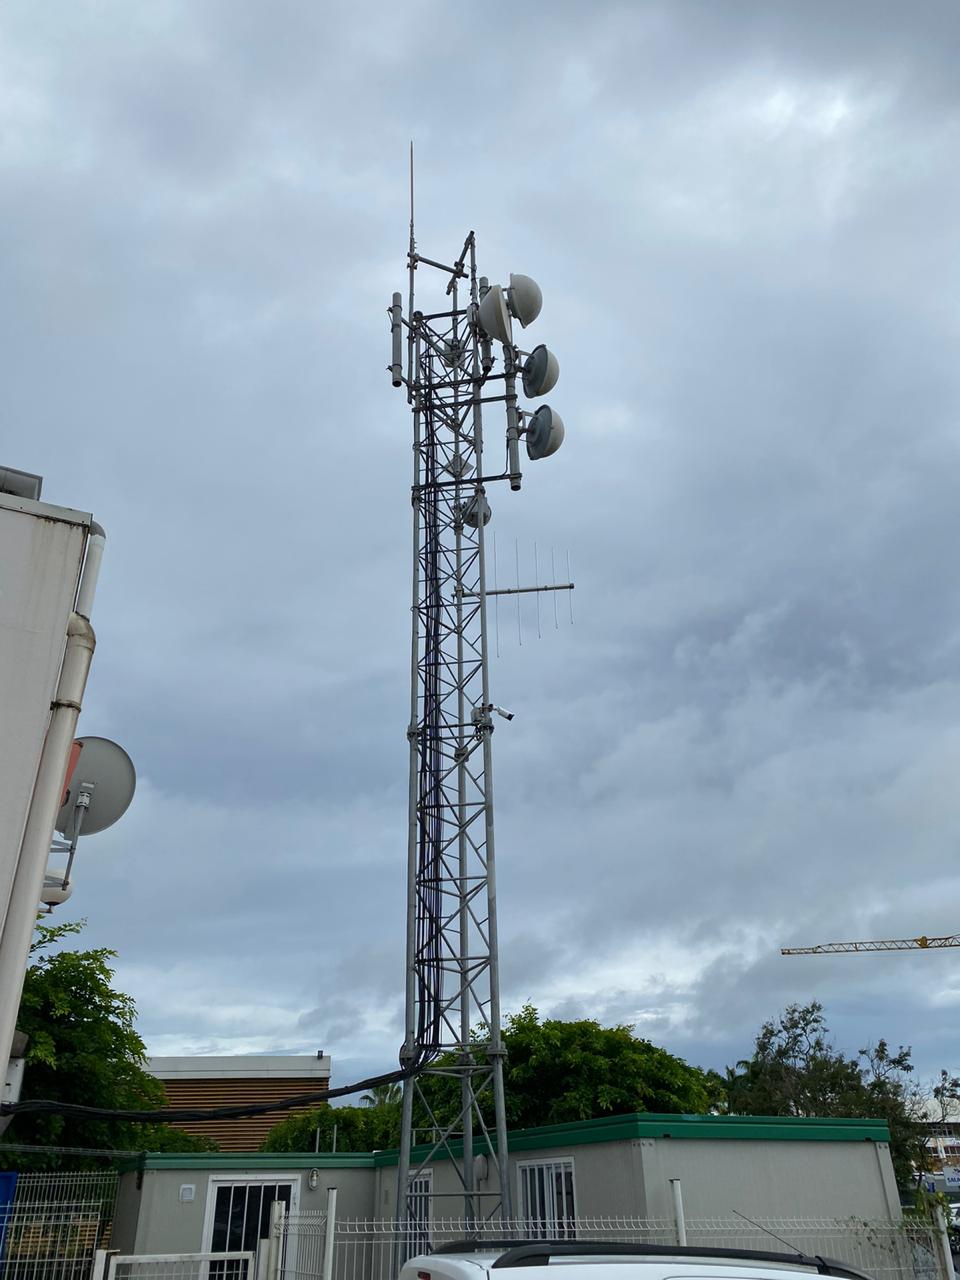     La foudre s'abat sur un pylône de RCI Guadeloupe

